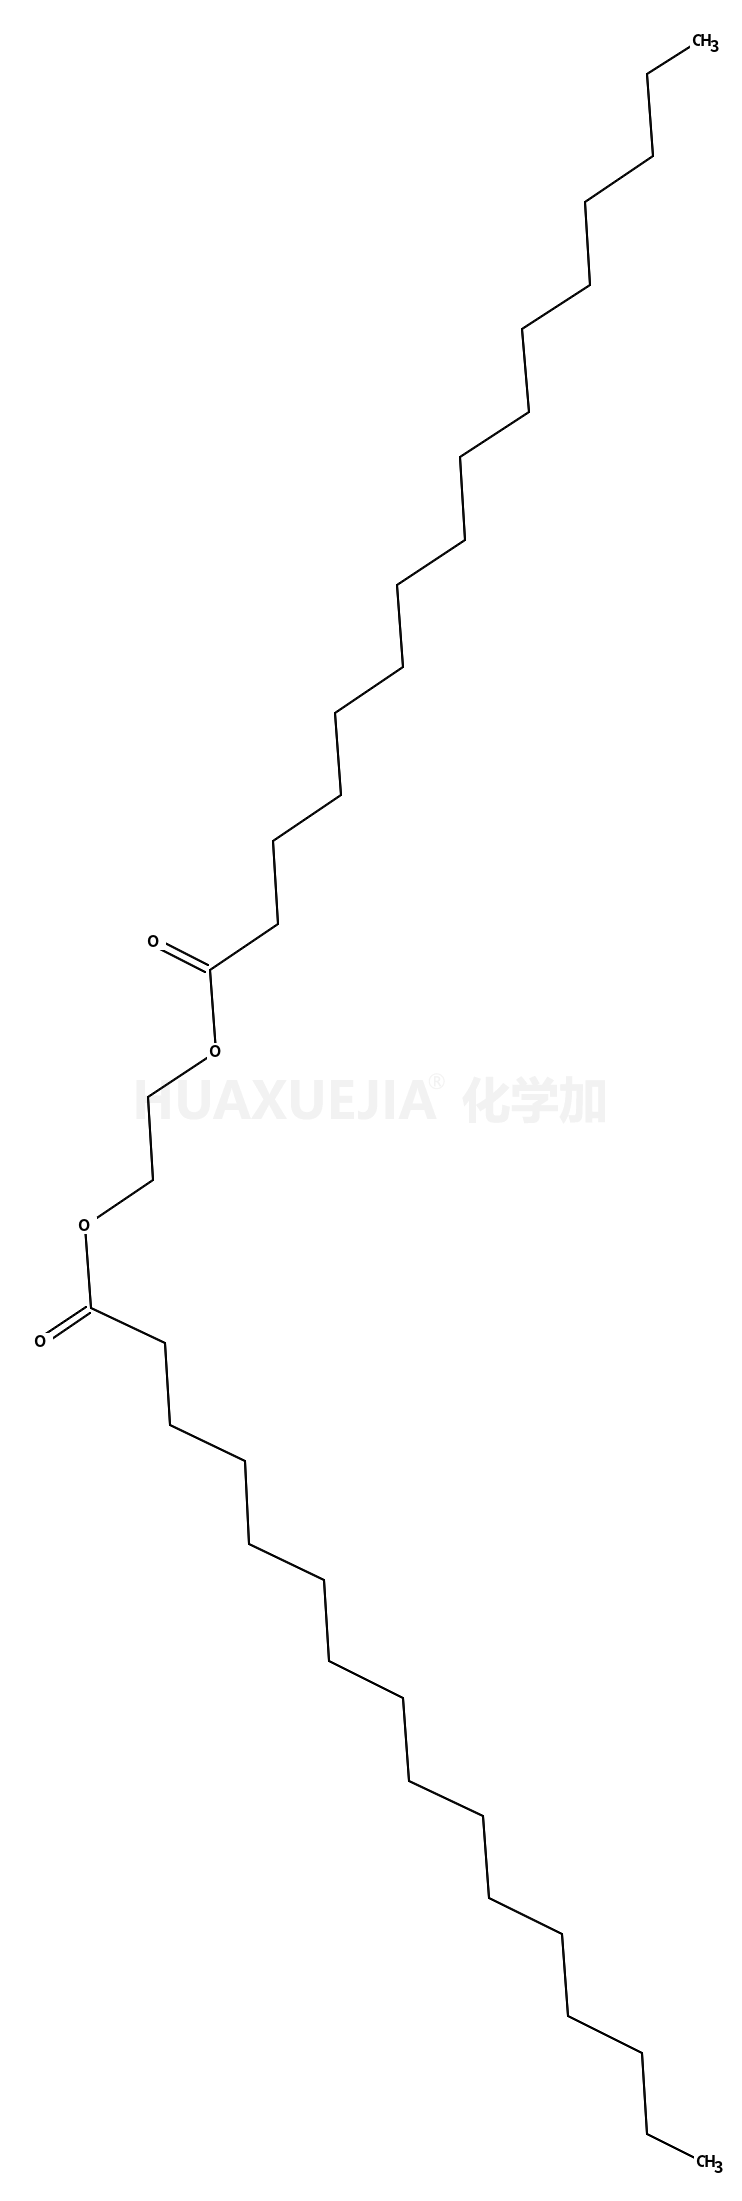 十六烷基酸-1,2-亚乙基酯